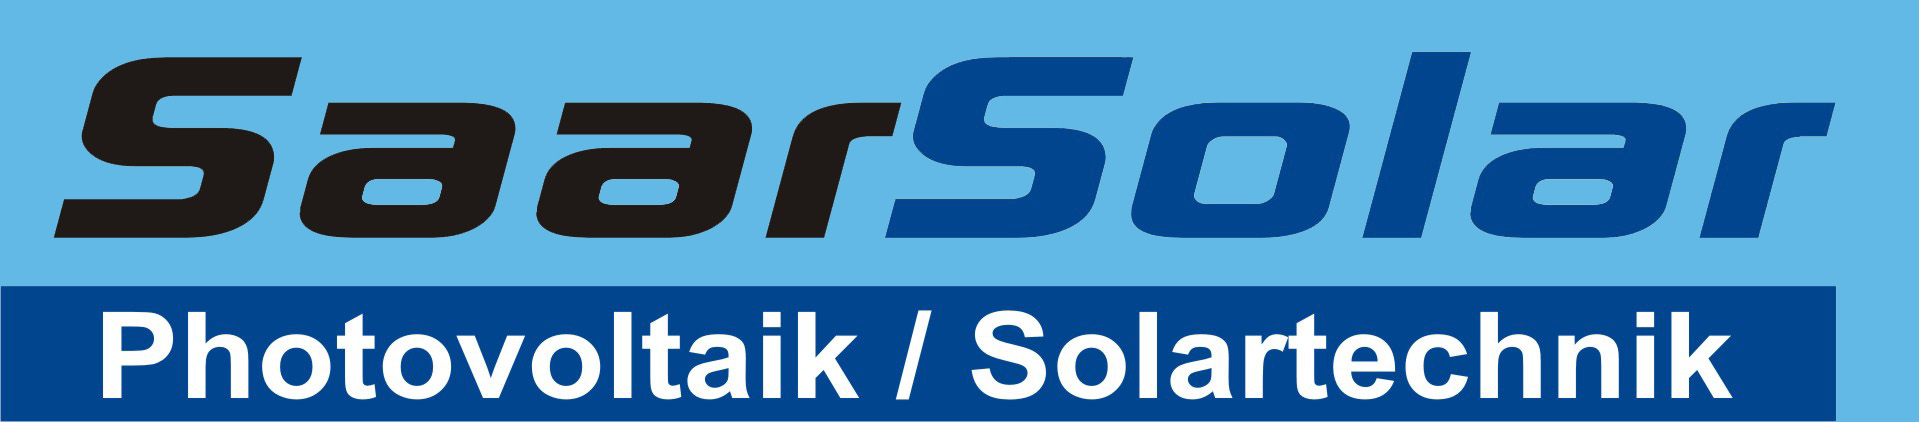 SaarSolar GmbH - Photovoltaik und Solartechnik